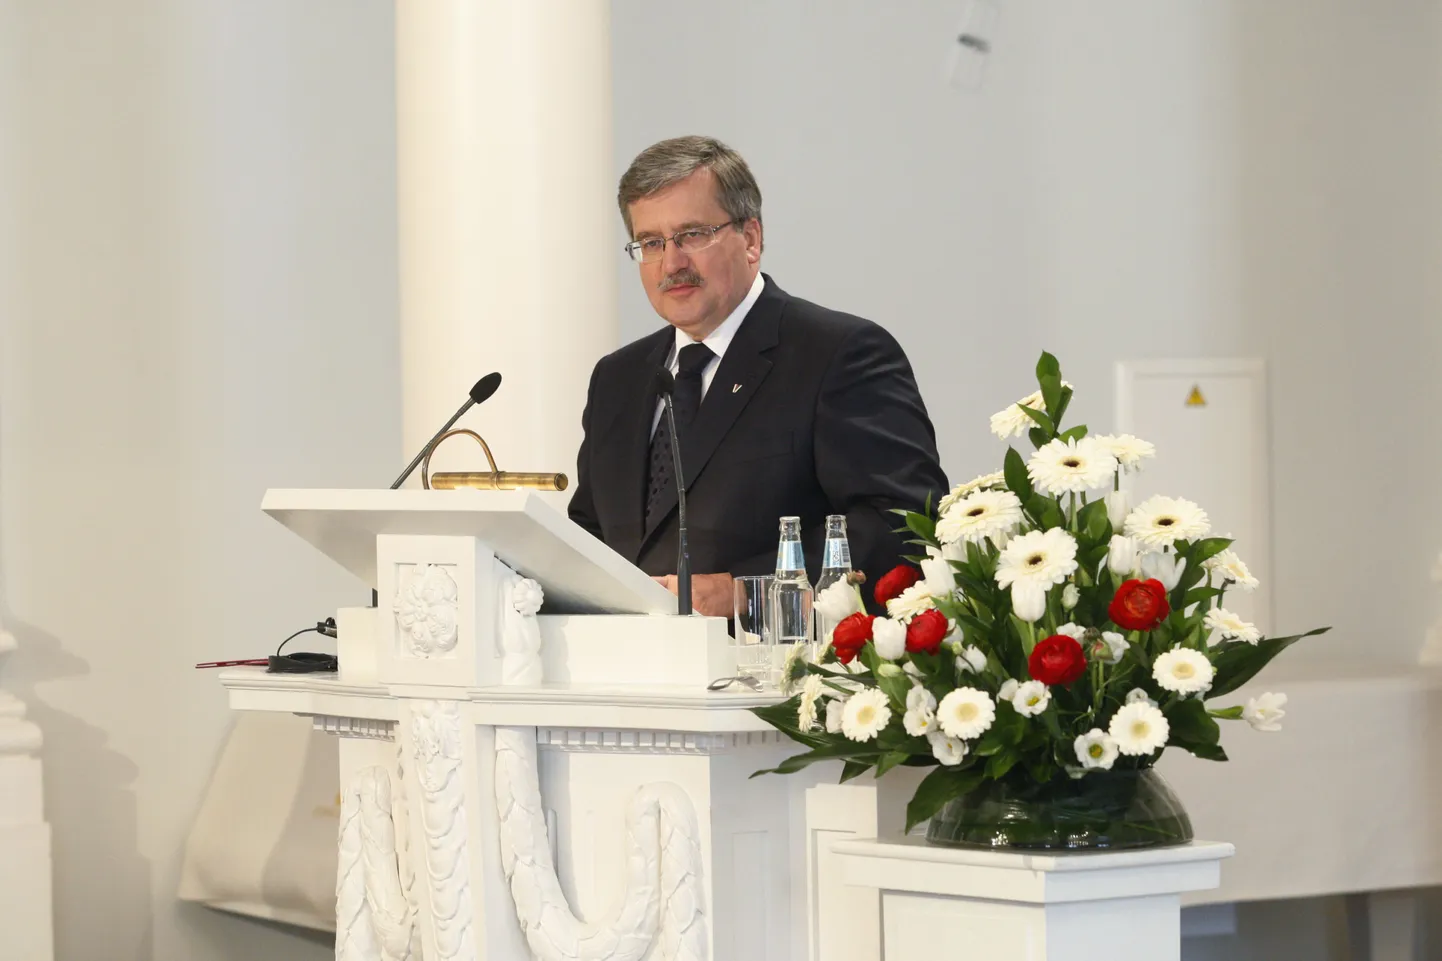 Täna külastas Tartut oma kahepäevase Eesti visiidi raames Poola president Bronislaw Komorowski. President esines Tartu Ülikooli aulas avaliku loenguga.